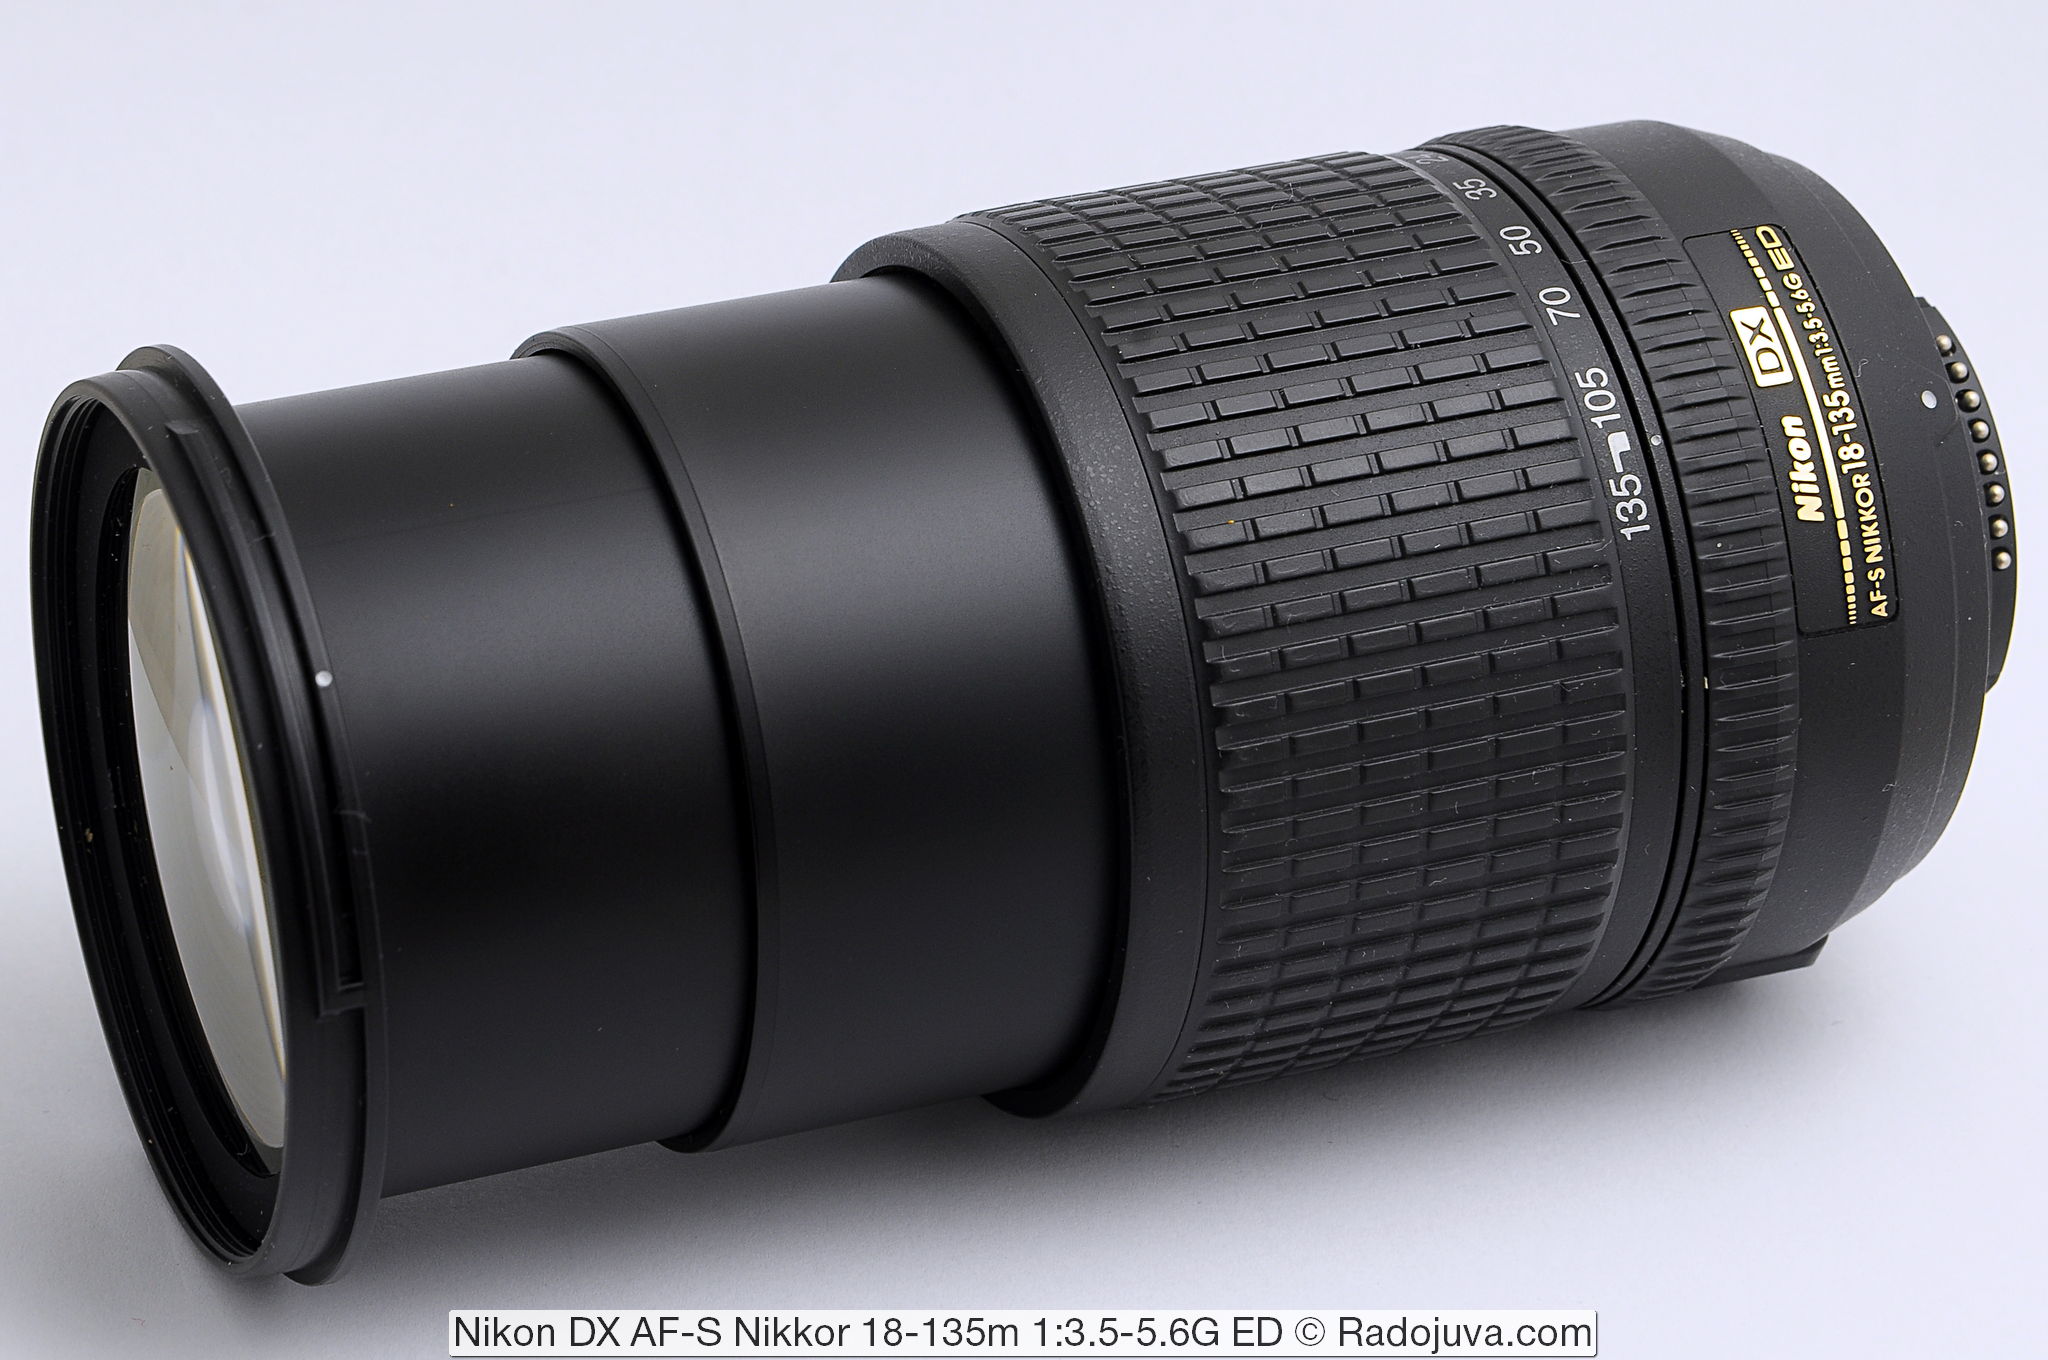 Nikon DX AF-S Nikkor 18-135m 1: 3.5-5.6G ED SWM IF Asférico